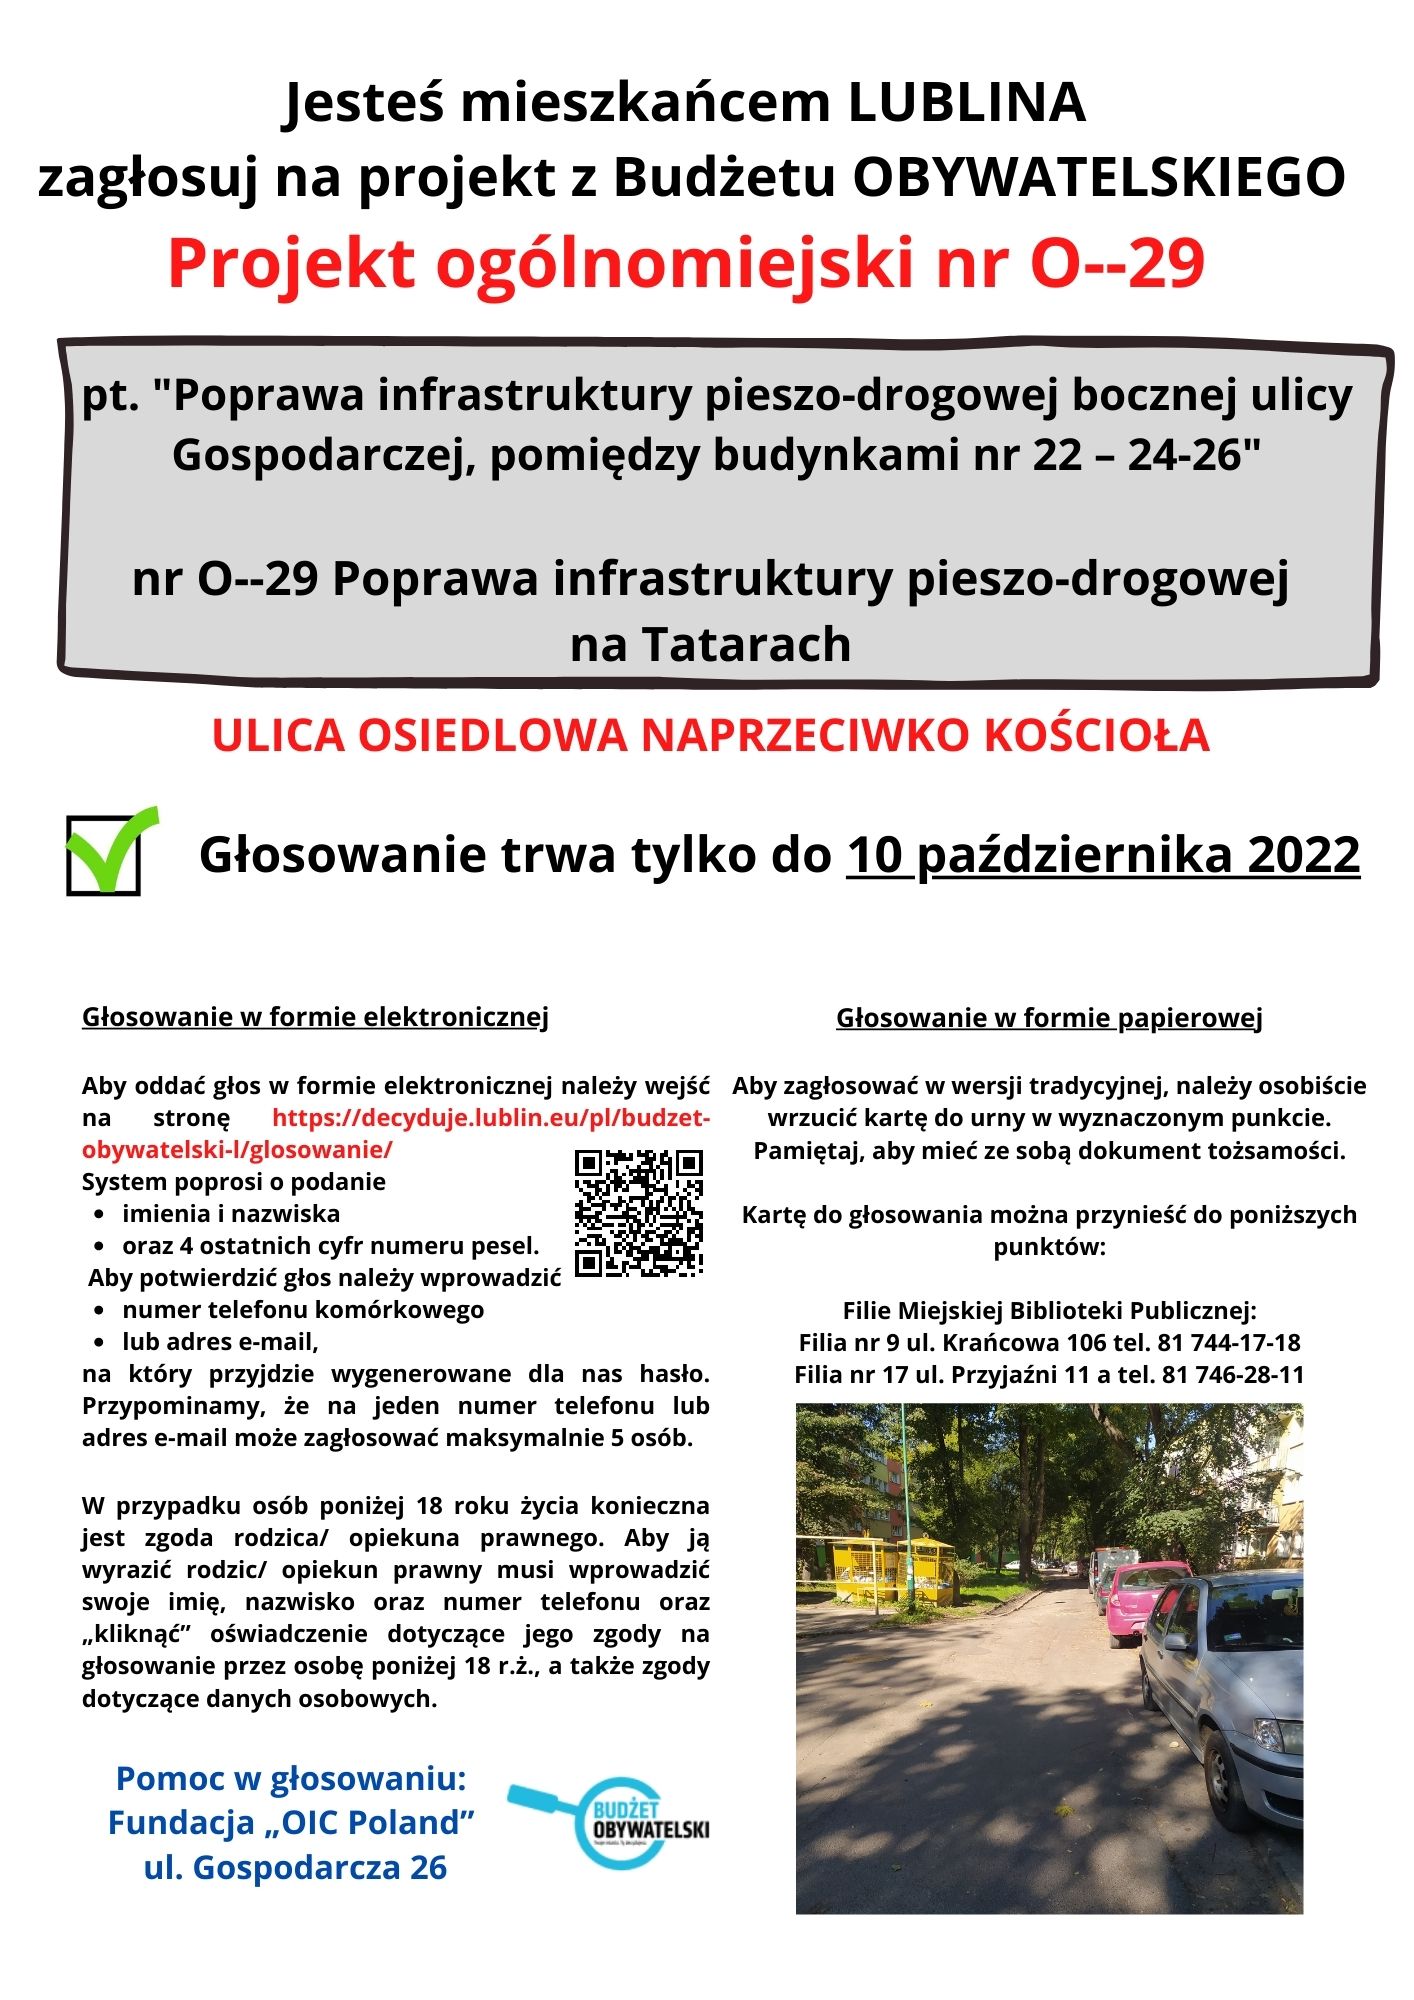 Jesteś mieszkańcem Lublina? Zagłosuj na Projekt nr 0-29 z Budżetu Obywatelskiego  IX edycji 2023!